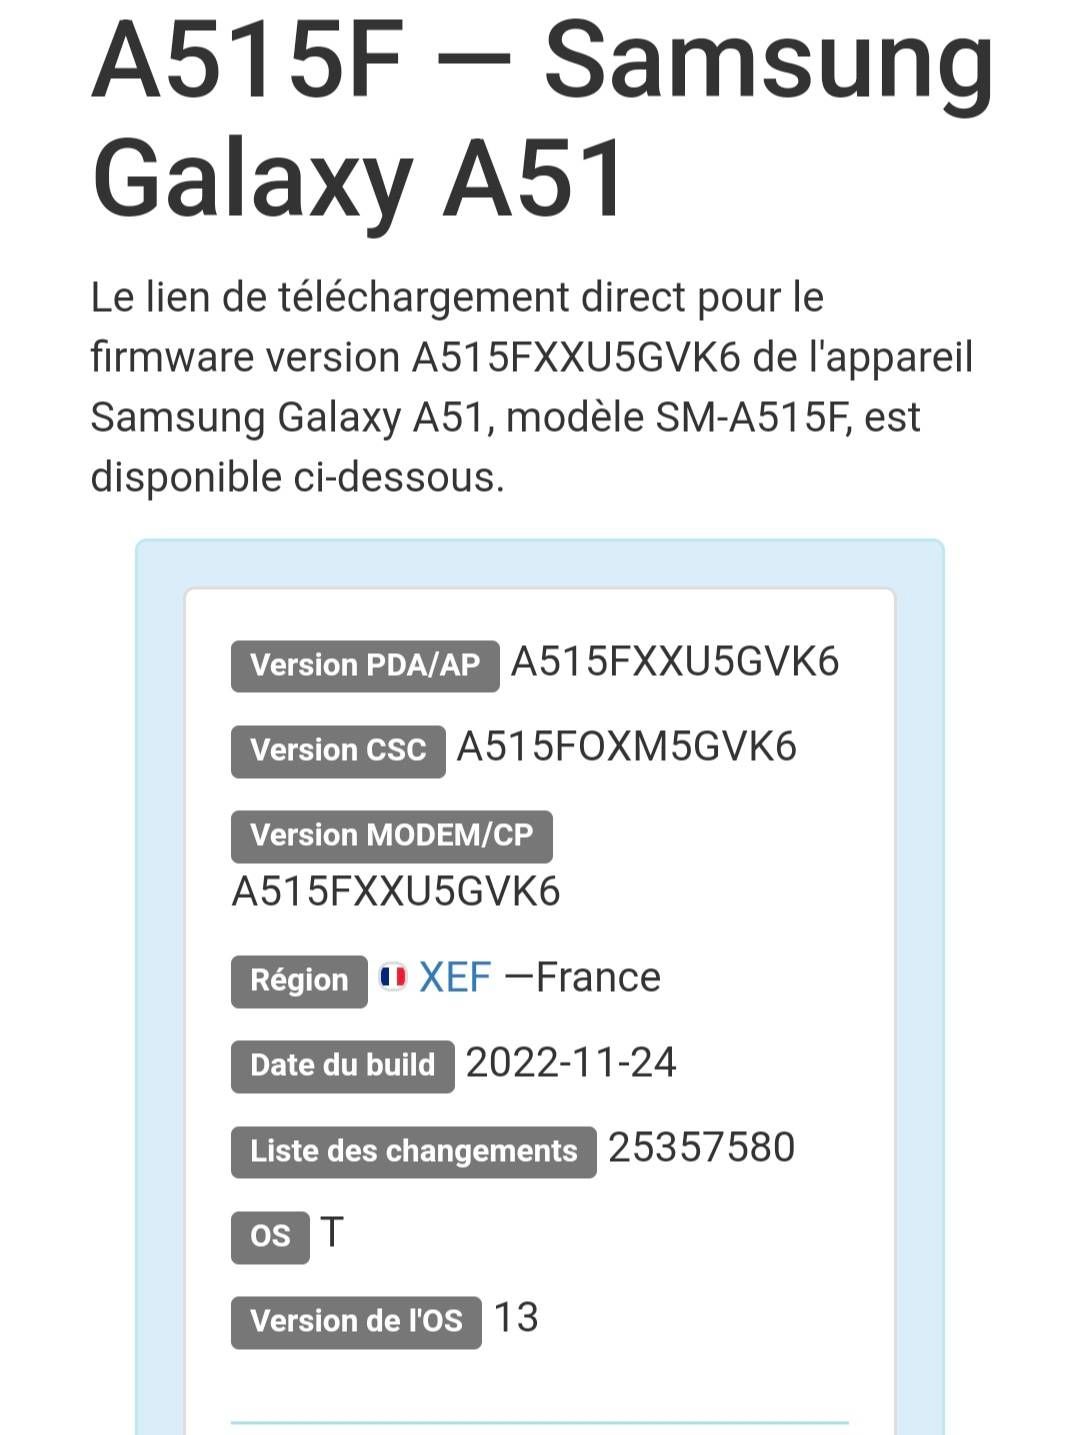 Mise à jour Android 13 sur Galaxy A51 5g - Samsung Community